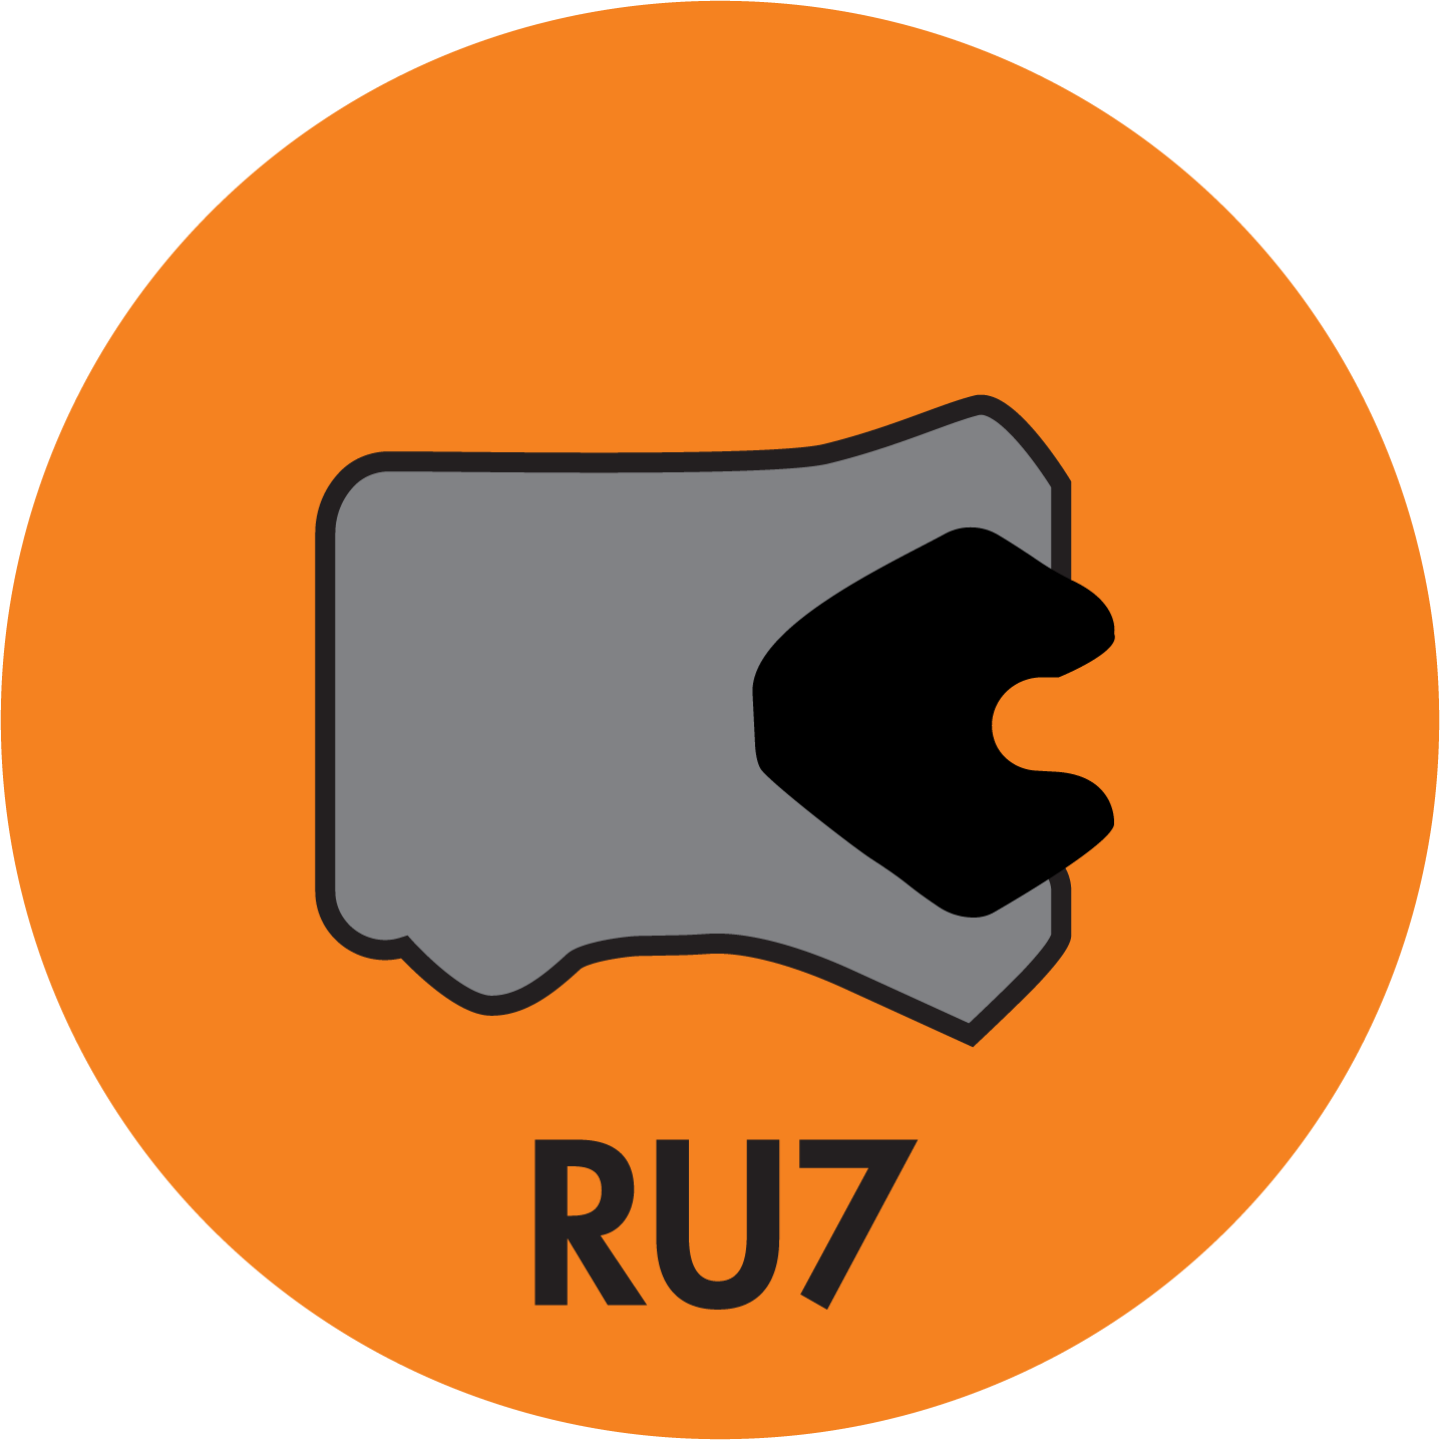 RU7 TWIN LIP ROD (LOADED) U-CUP (AU+NBR) - RU7-25002750-375-P92E Image 1